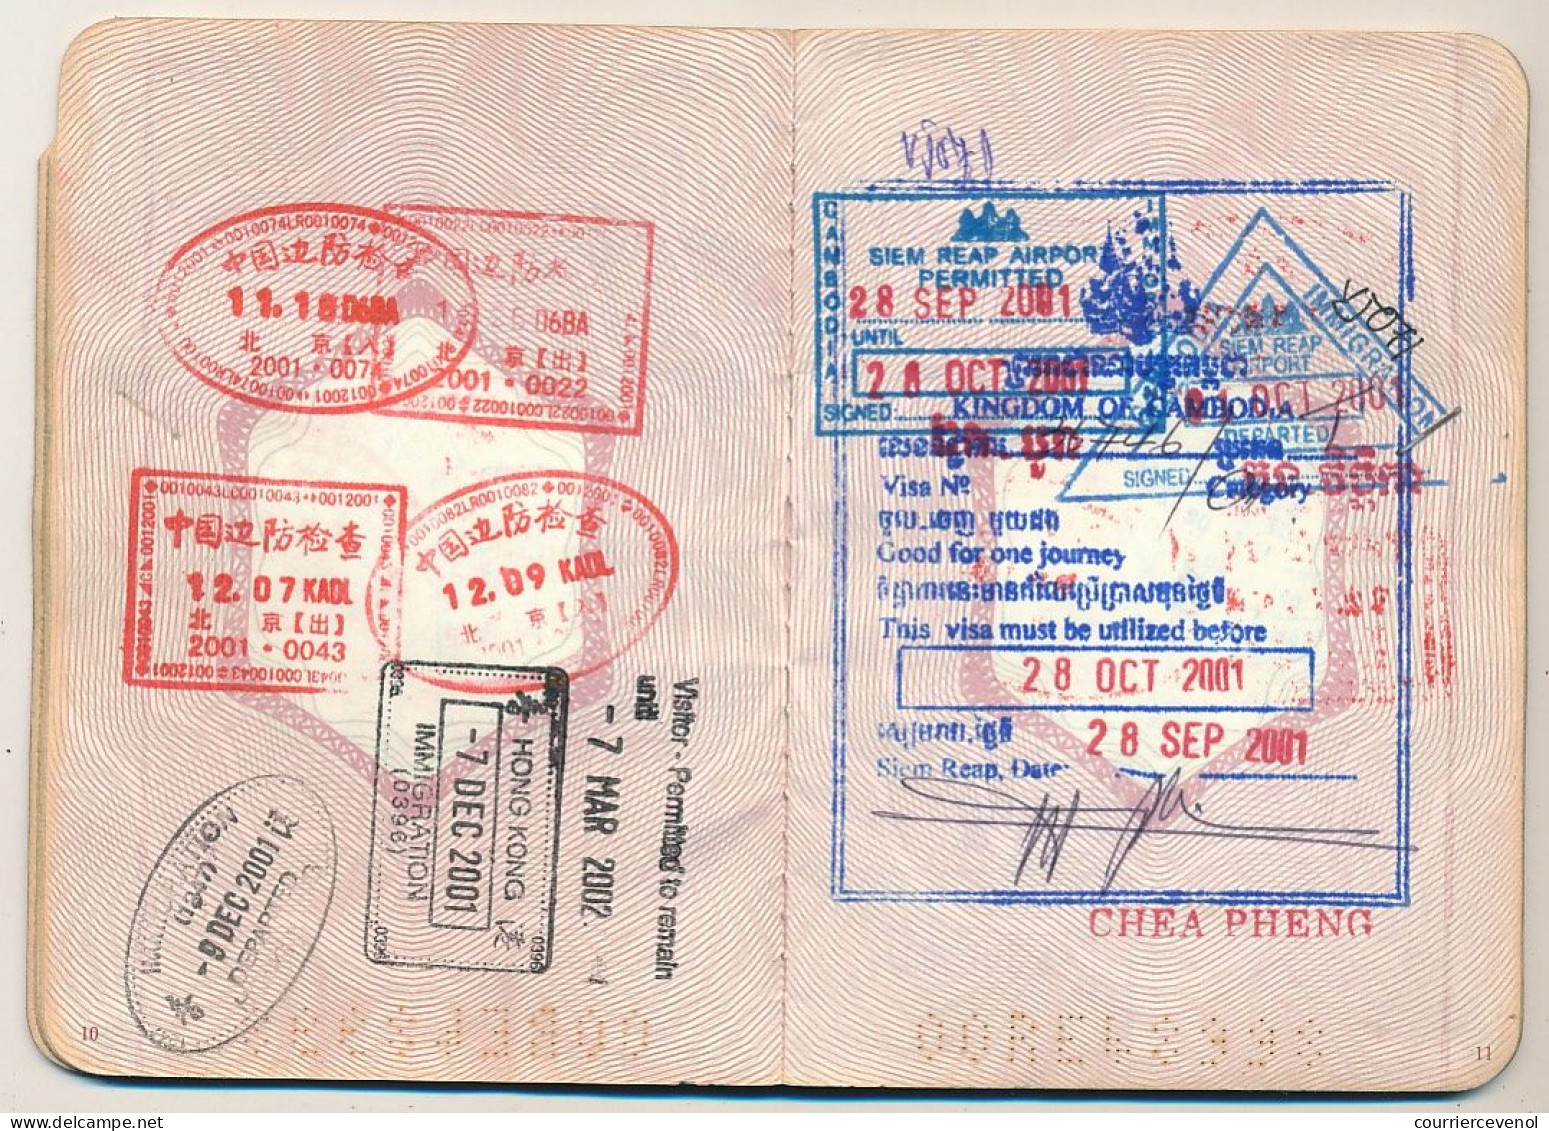 FRANCE / CHINE - Passeport Marseillais établi à Pékin - Fiscal Affaires Etrangères 1999 Ambassade Pékin - Visas +++ - Covers & Documents